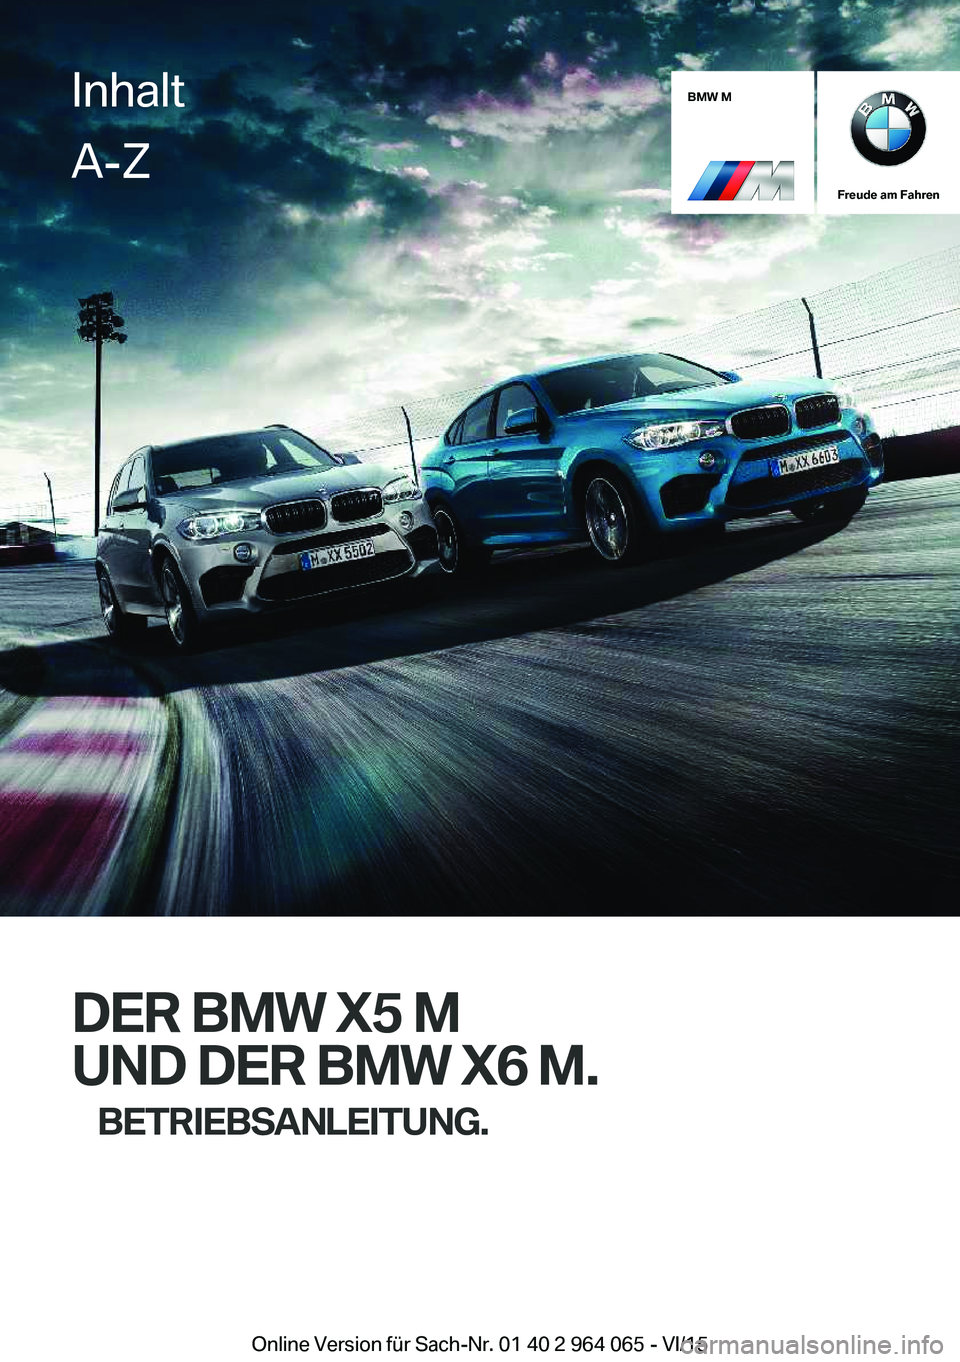 BMW X6 M 2016  Betriebsanleitungen (in German) BMW M
Freude am Fahren
DER BMW X5 MUND DER BMW X6 M. BETRIEBSANLEITUNG.
InhaltA-Z
Online Version für Sach-Nr. 01 40 2 964 065 - VI/15   